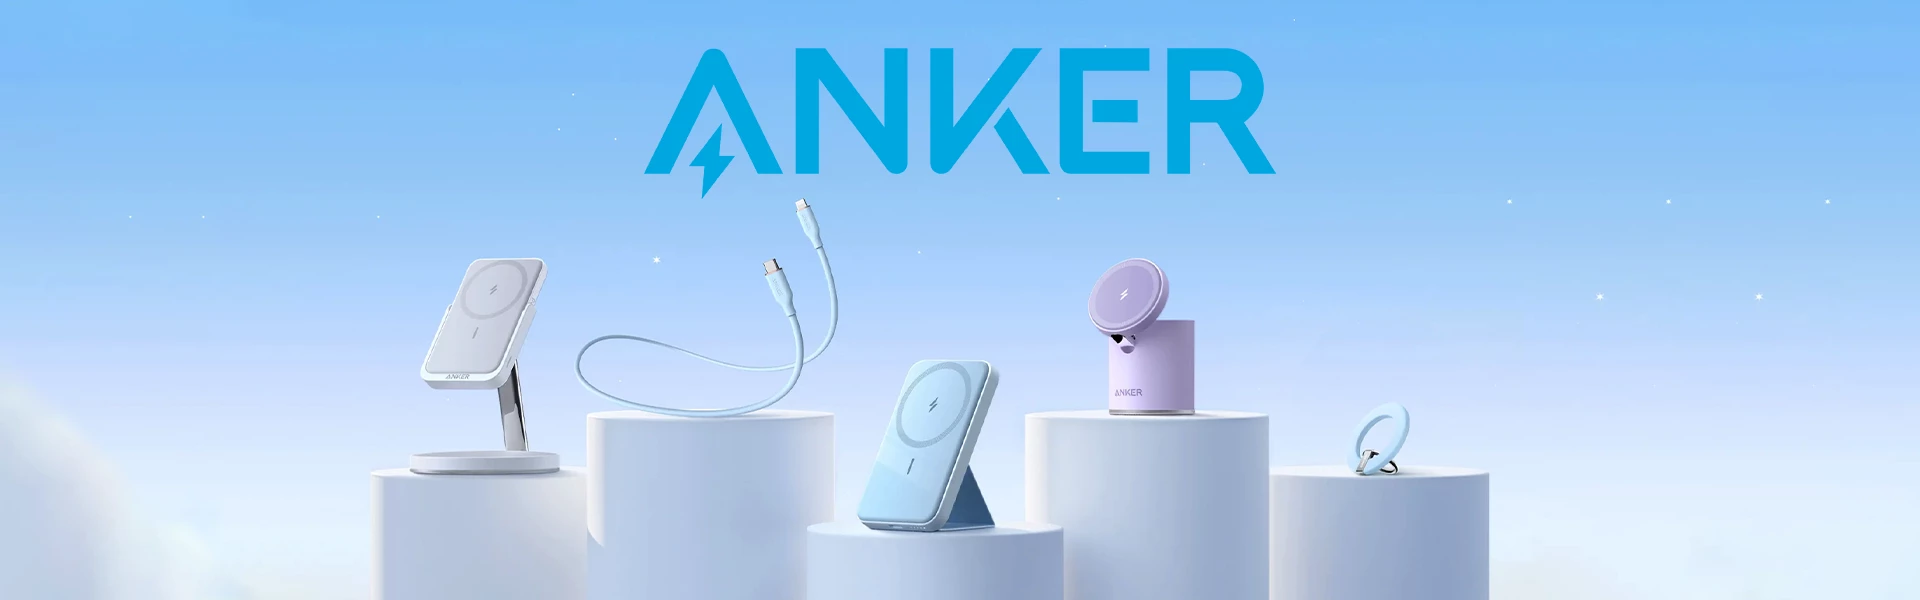 anker-banner